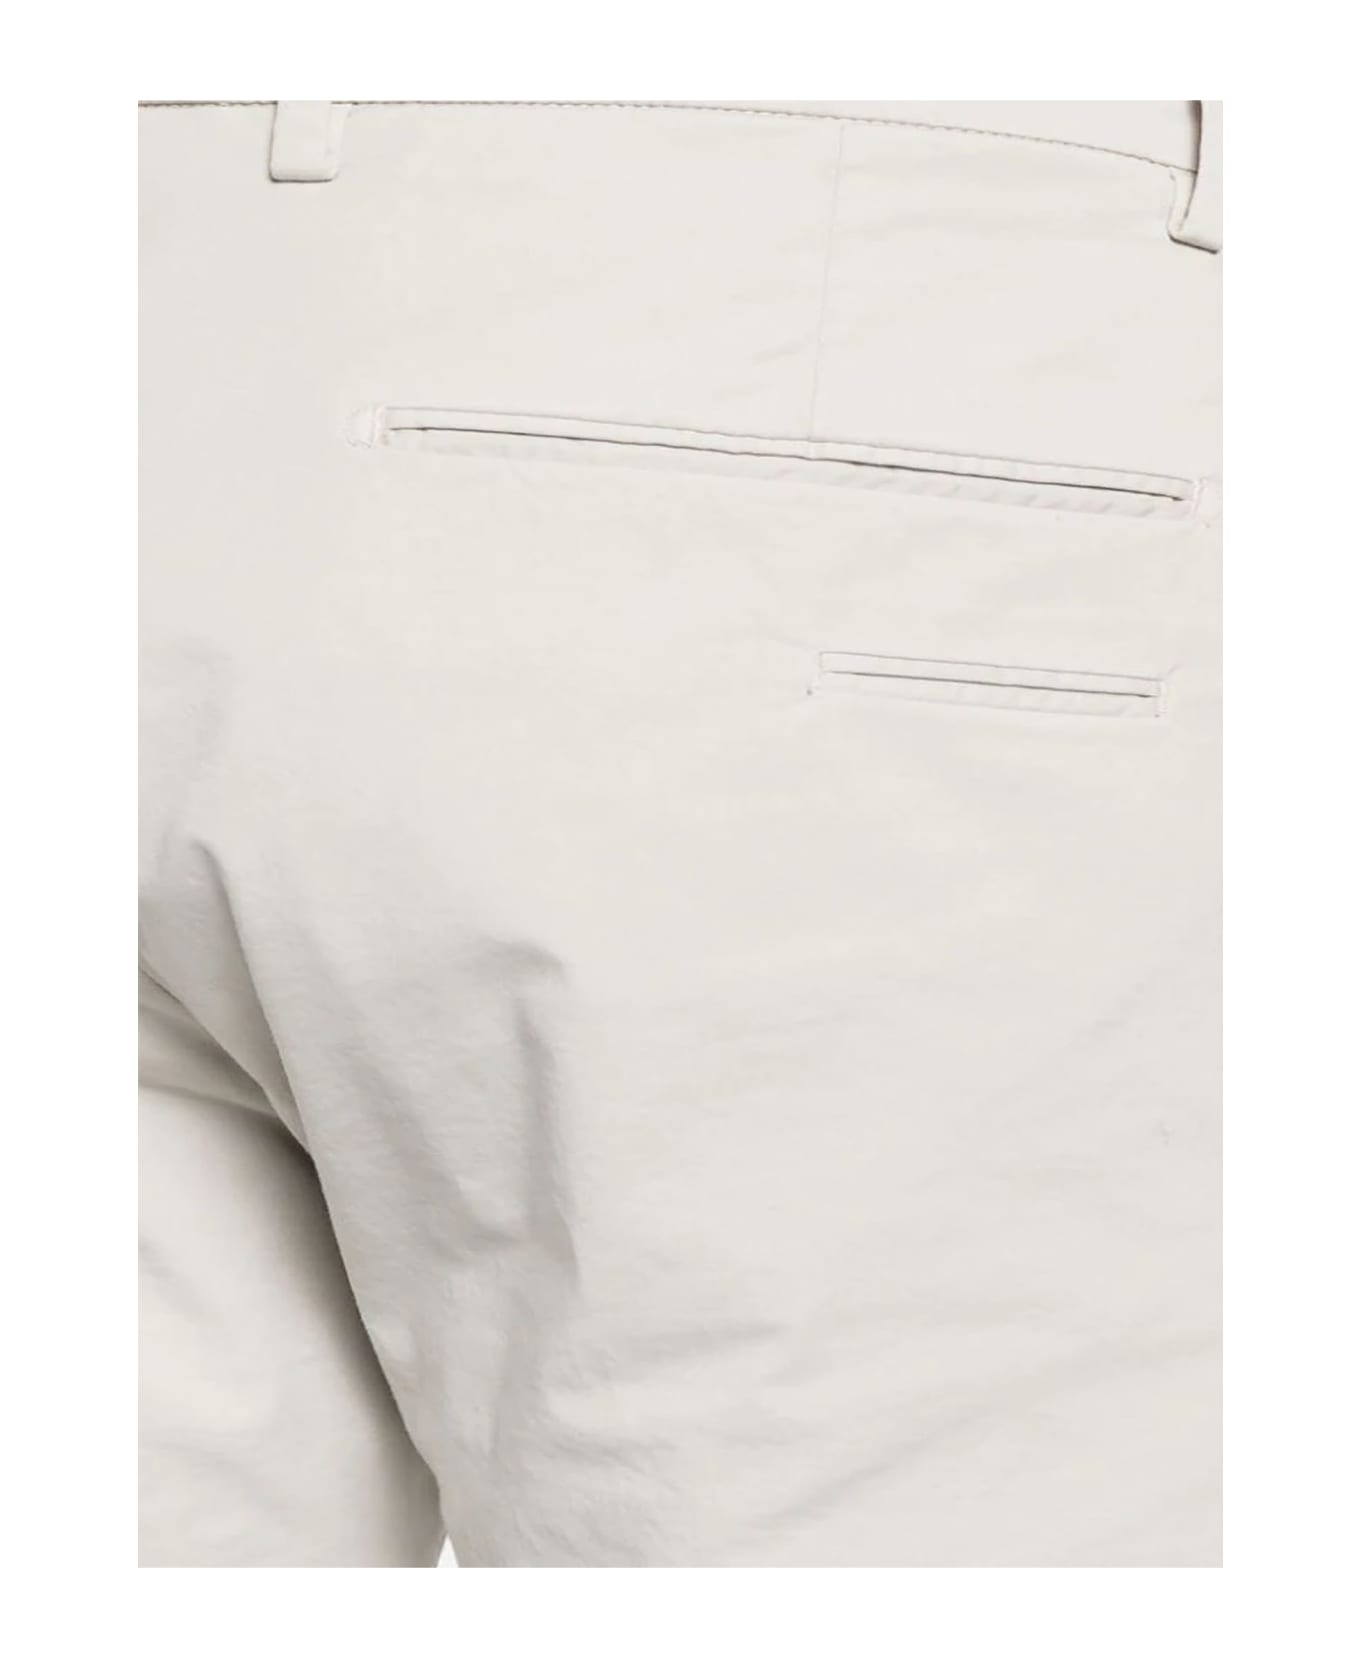 Briglia 1949 Off-white Stretch-cotton Trousers - Neutro